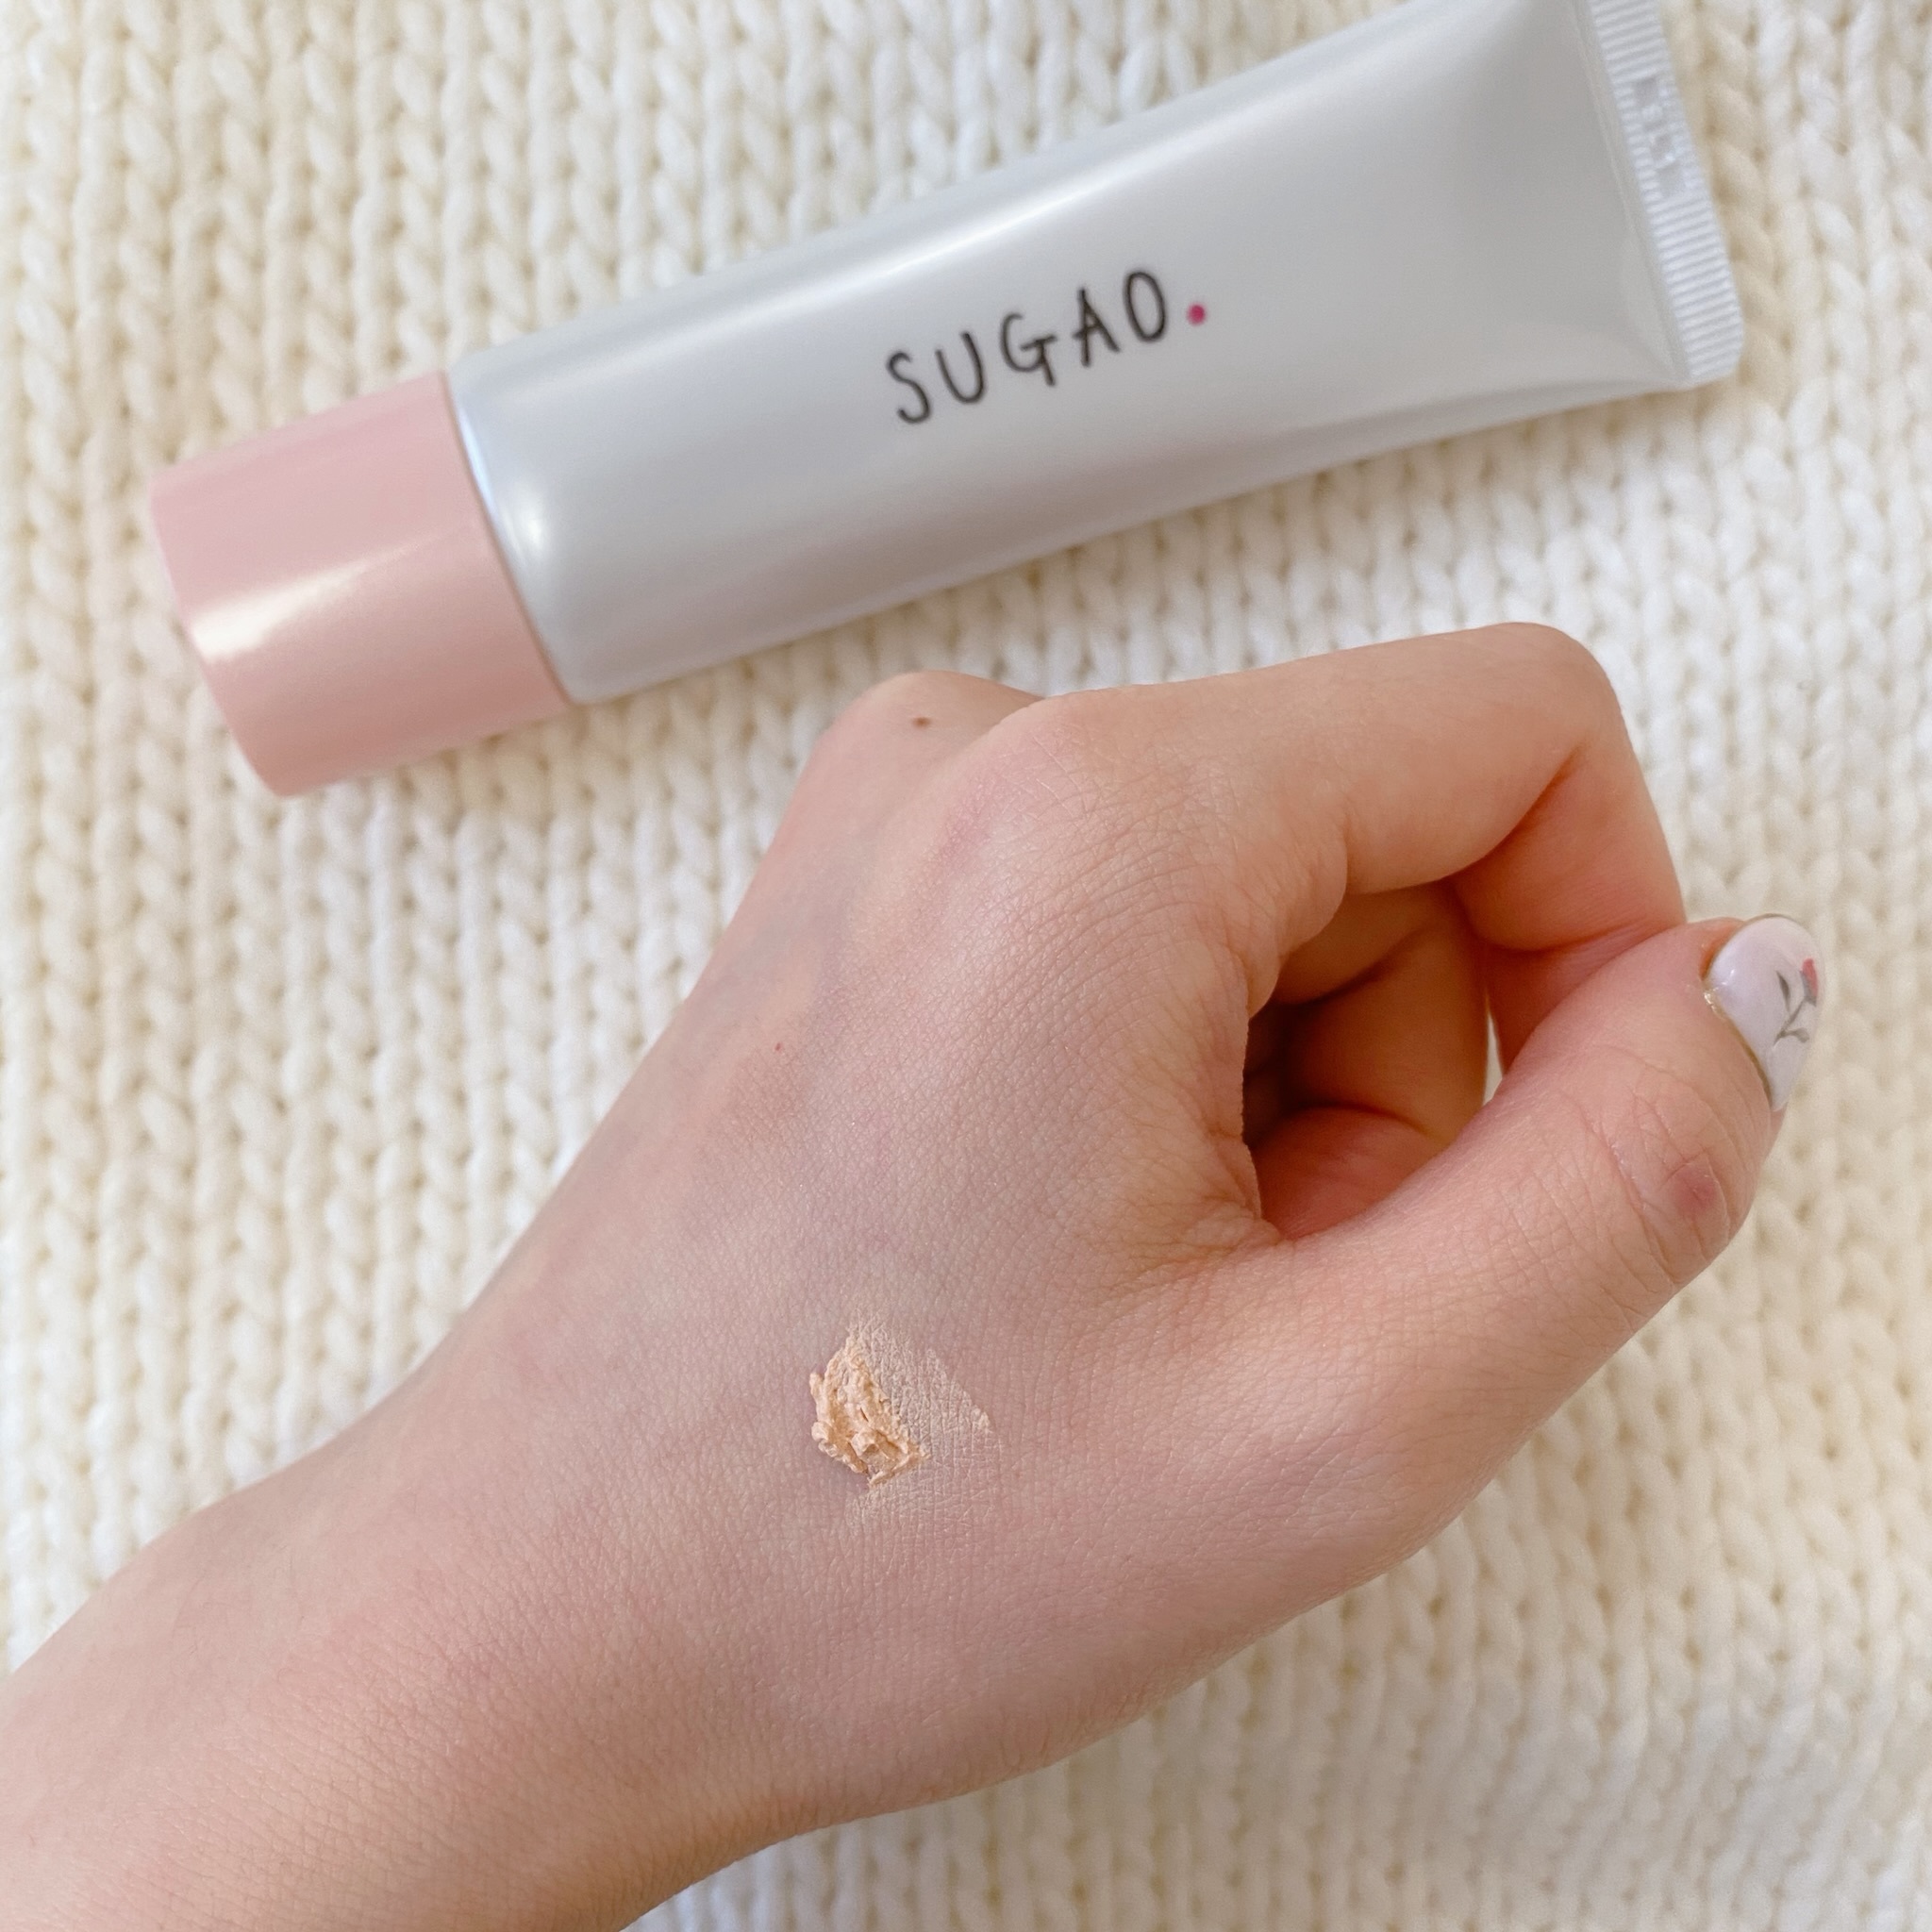 [Có sẵn] [Chính hãng] Kem nền CC Sugao made in Japan cao cấp giúp cải thiện các khuyết điểm trên da